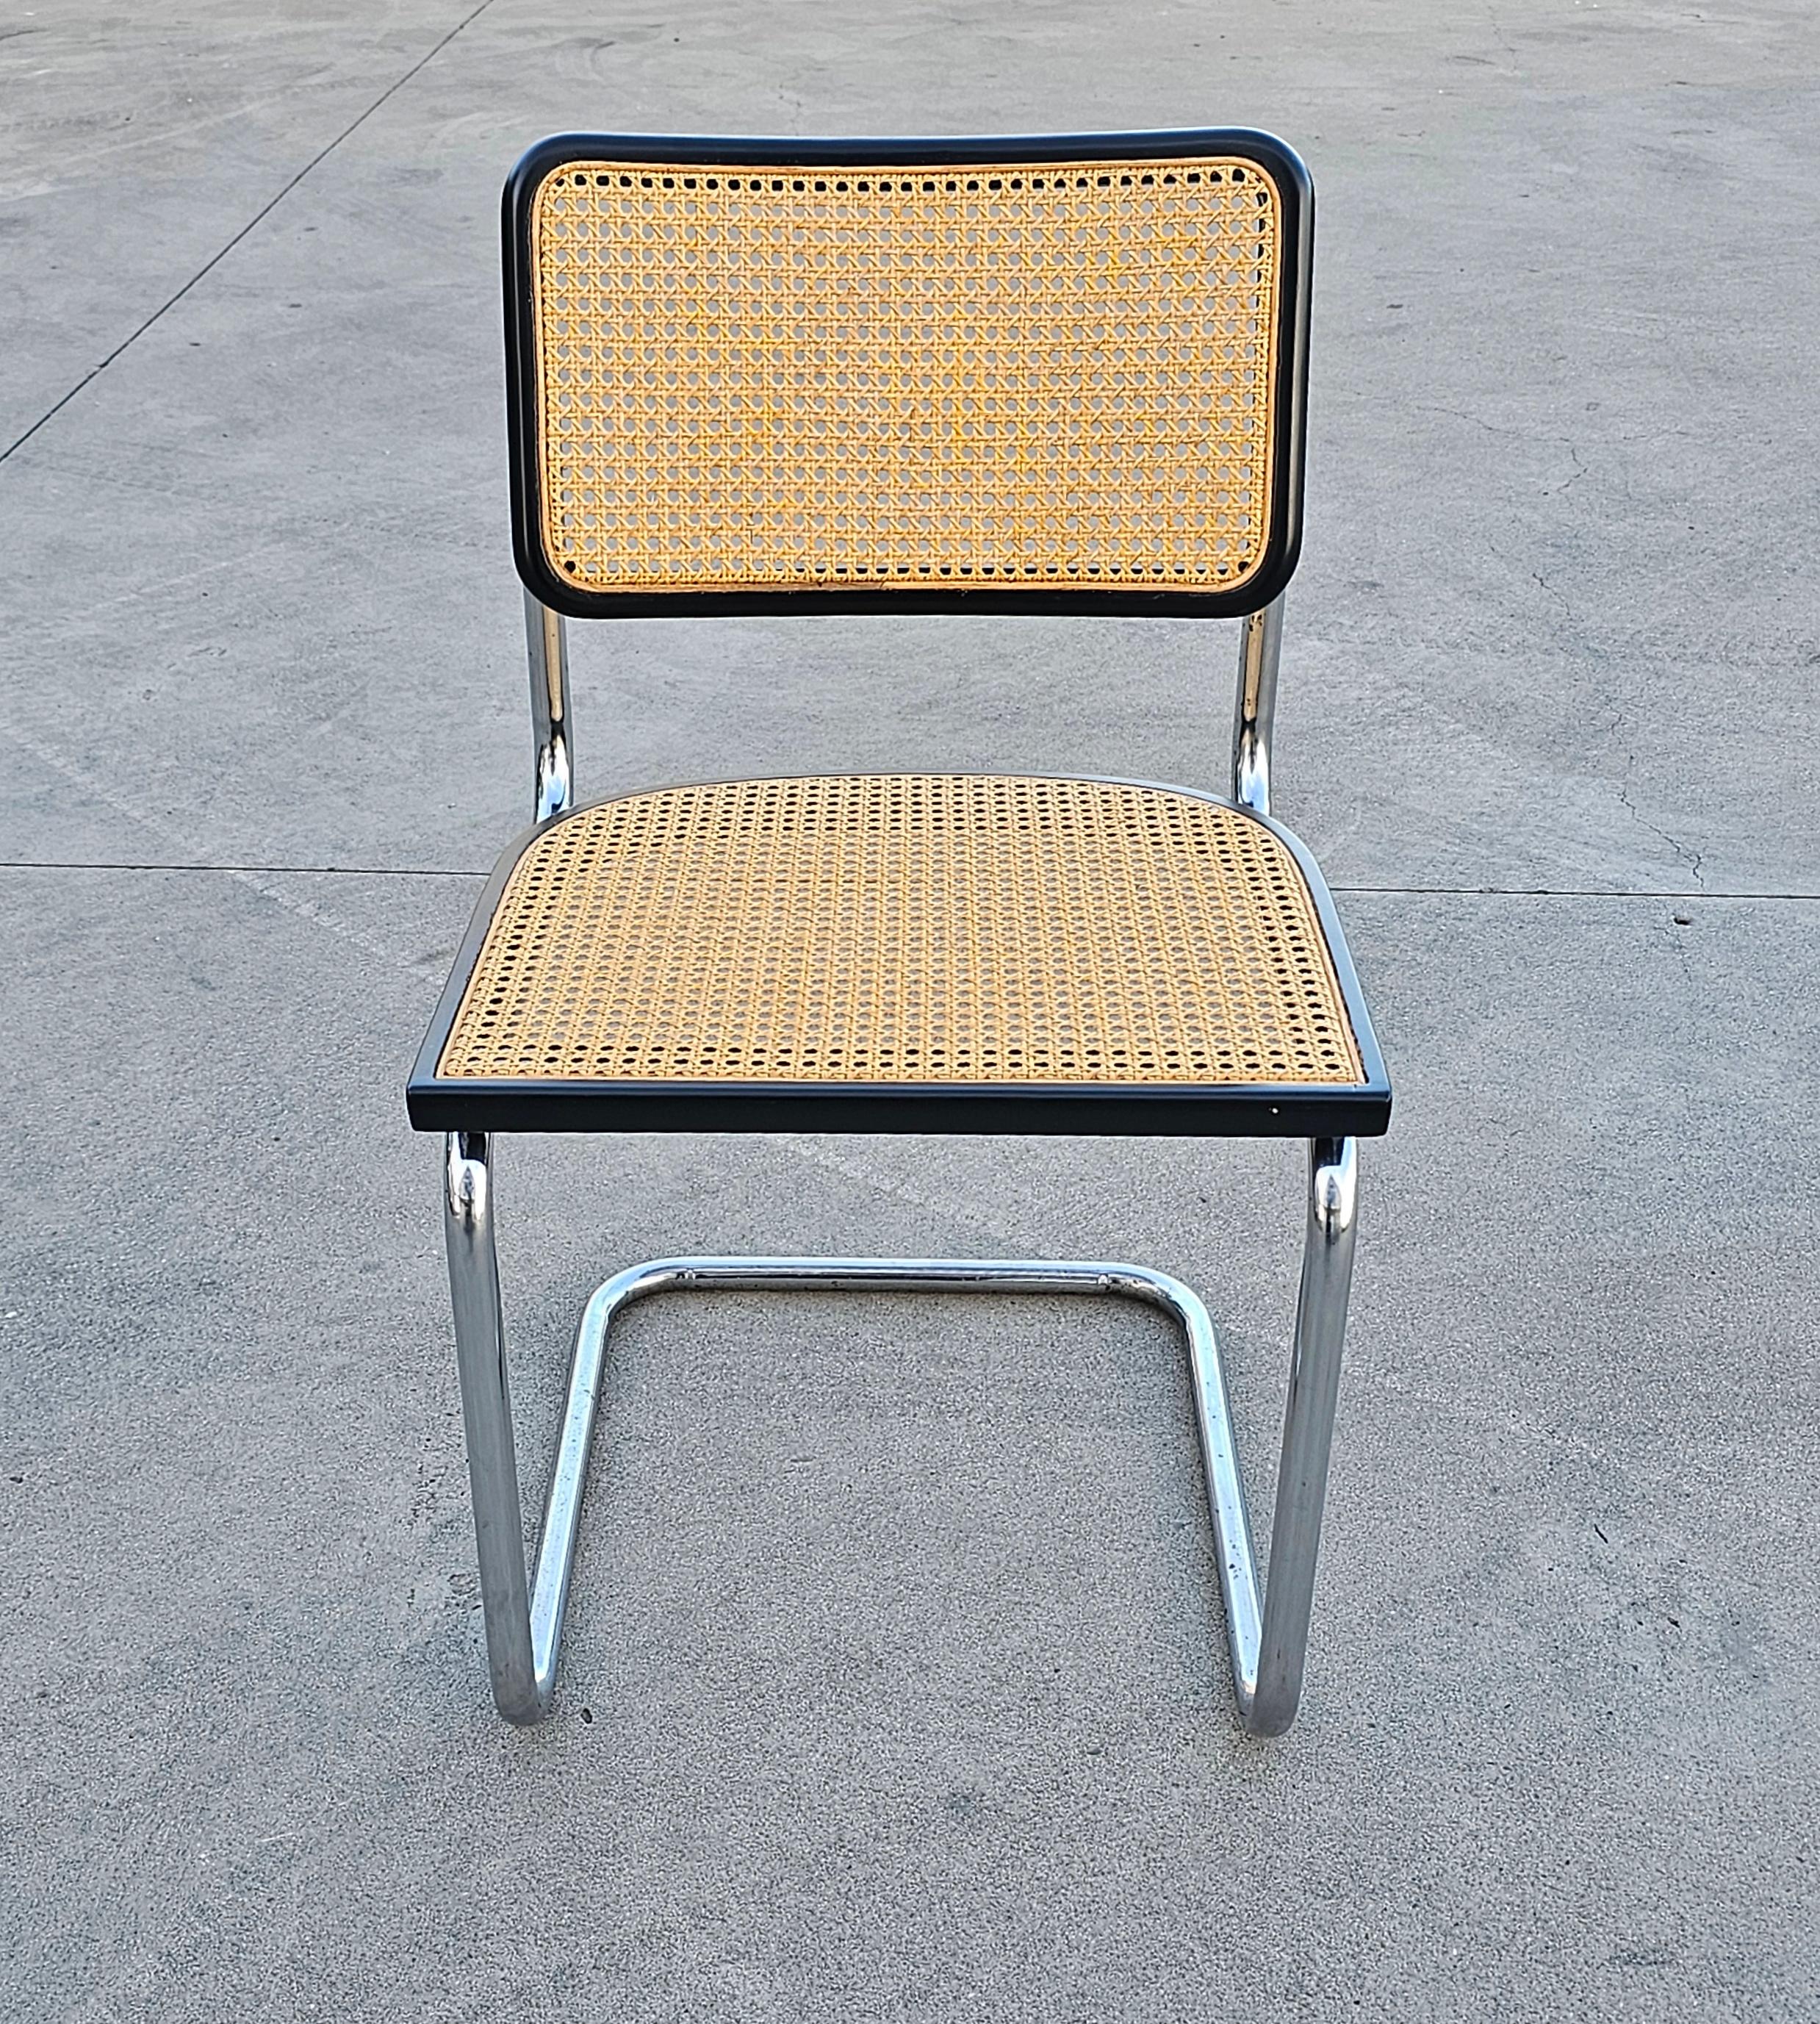 Cette liste présente des chaises très connues - Cesca Chair de Marcel Breuer. La fabrication des chaises est attribuée à Gavina.

Marcel Breuer était un architecte qui a travaillé à l'école d'architecture et de design de Bauahus. Il a conçu la